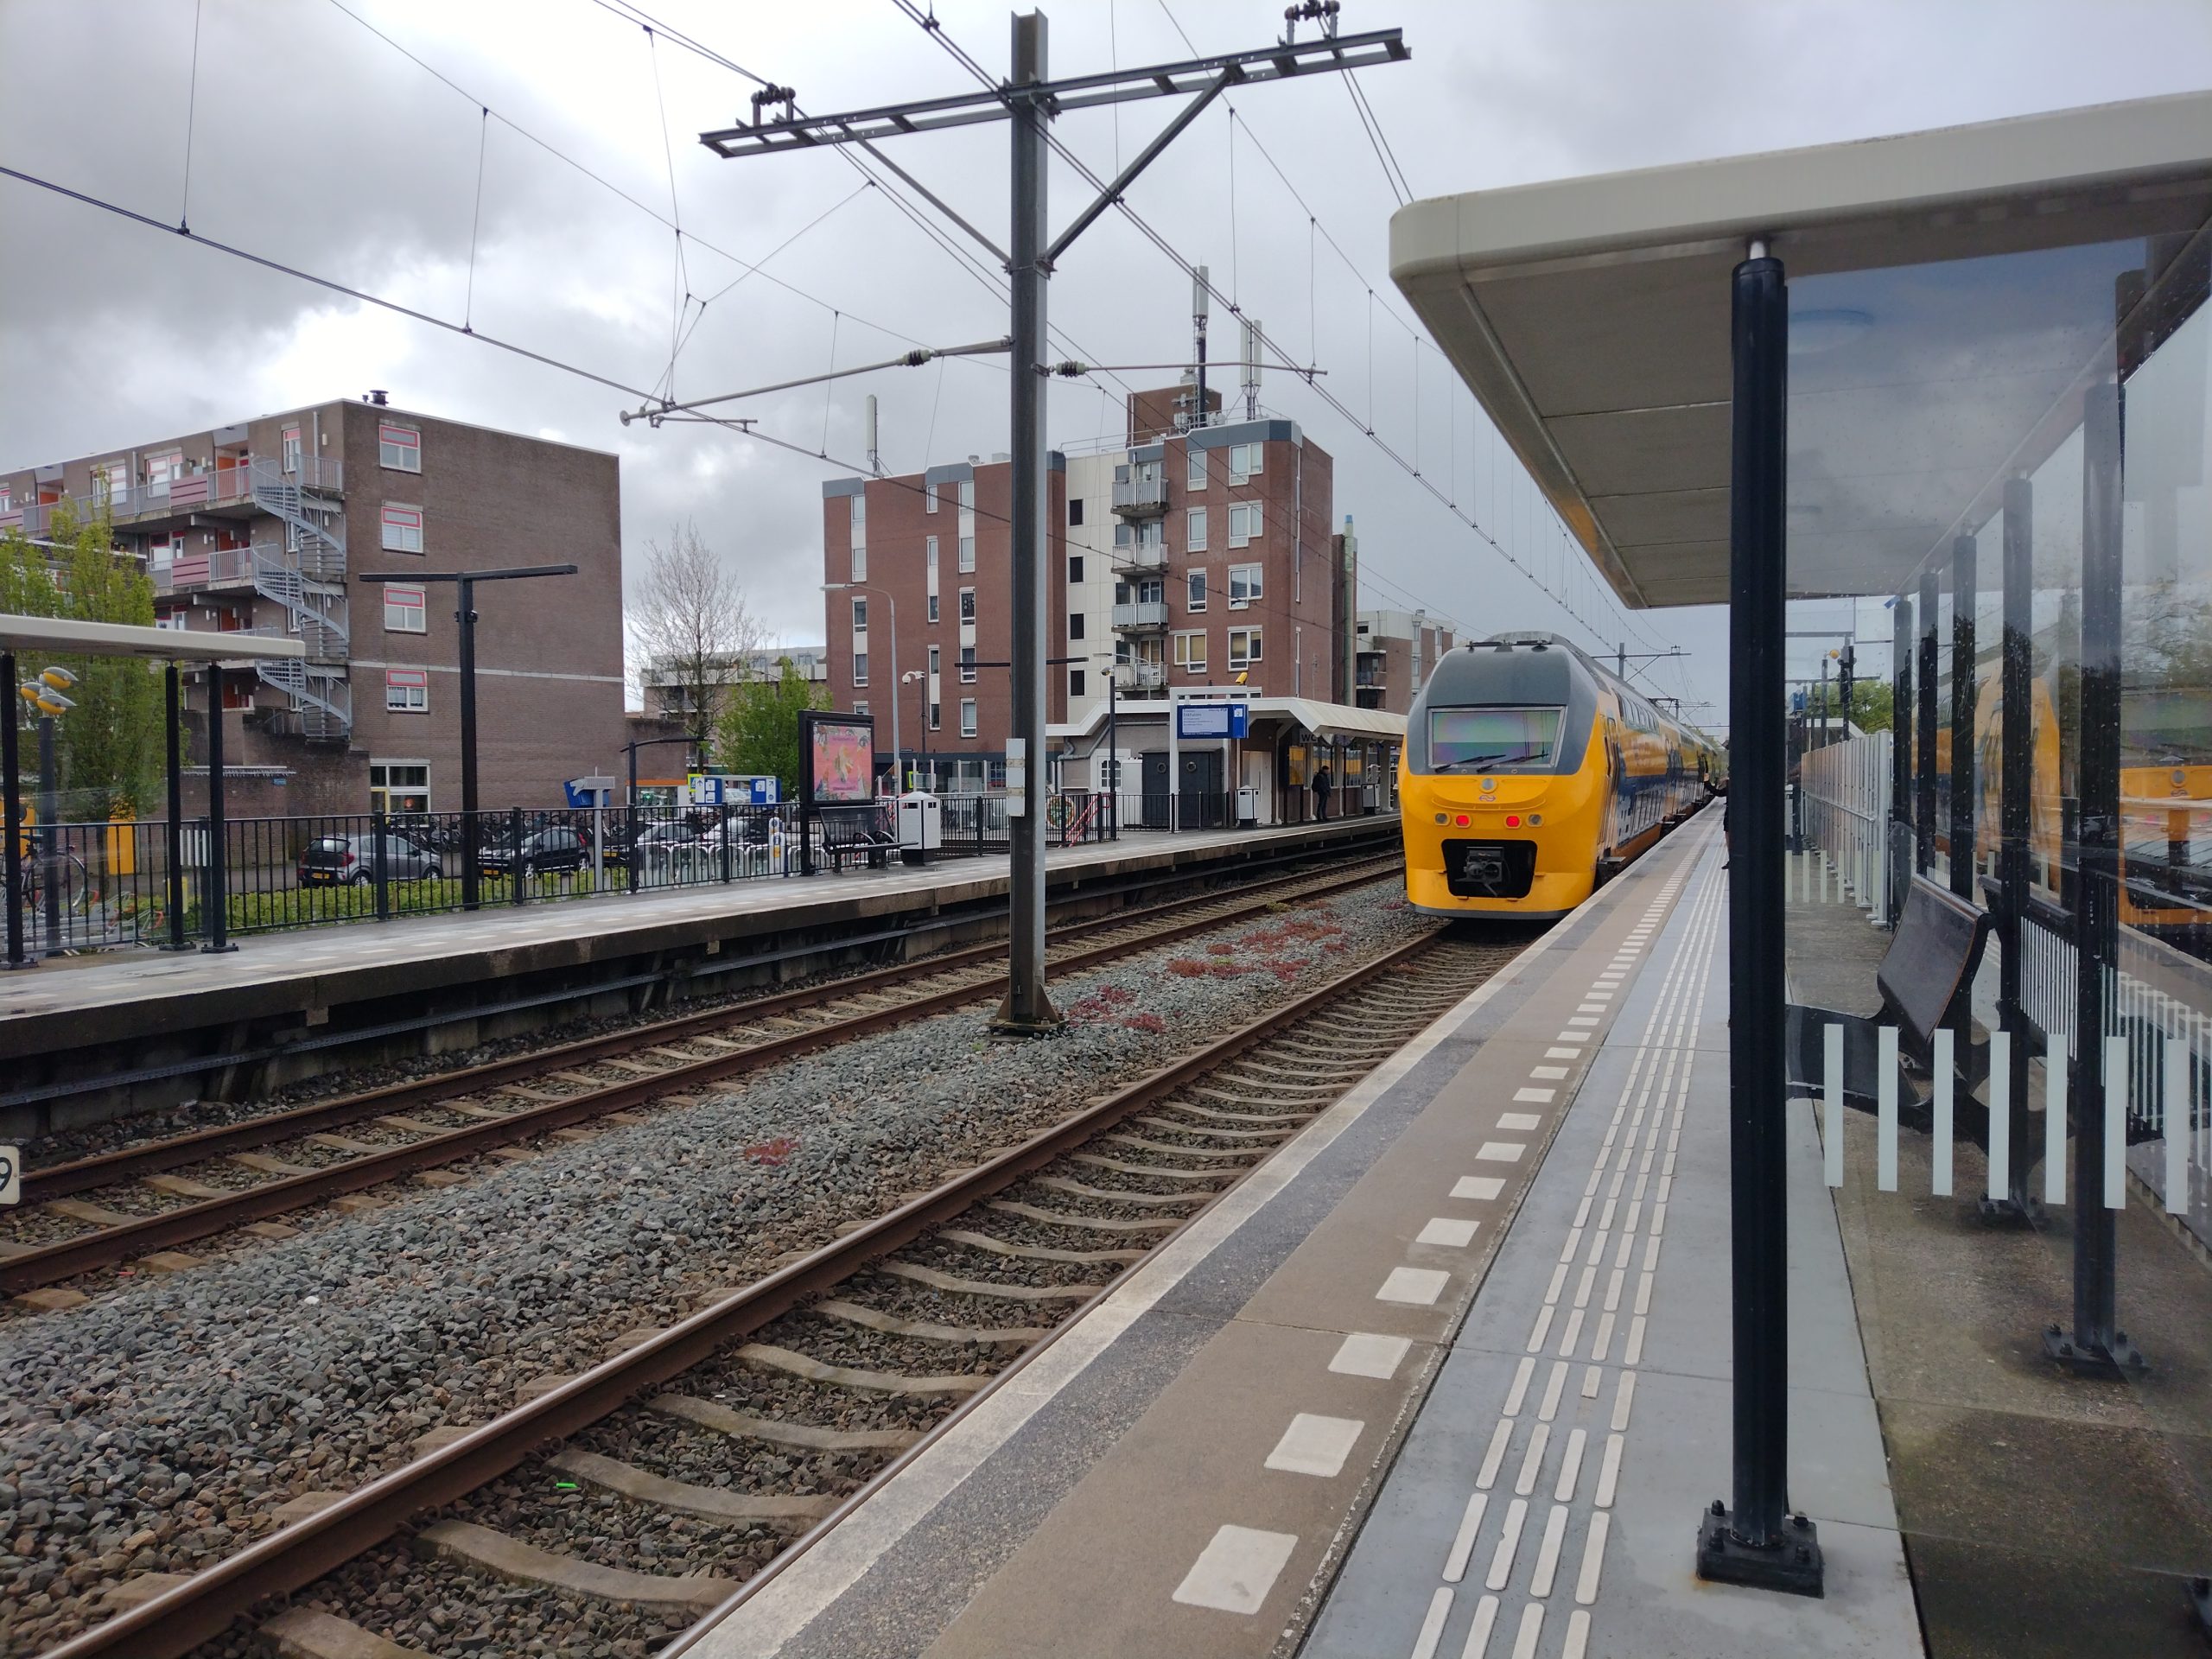 Station Hoorn Kersenboogerd krijgt nieuwe perrons en wachtruimtes